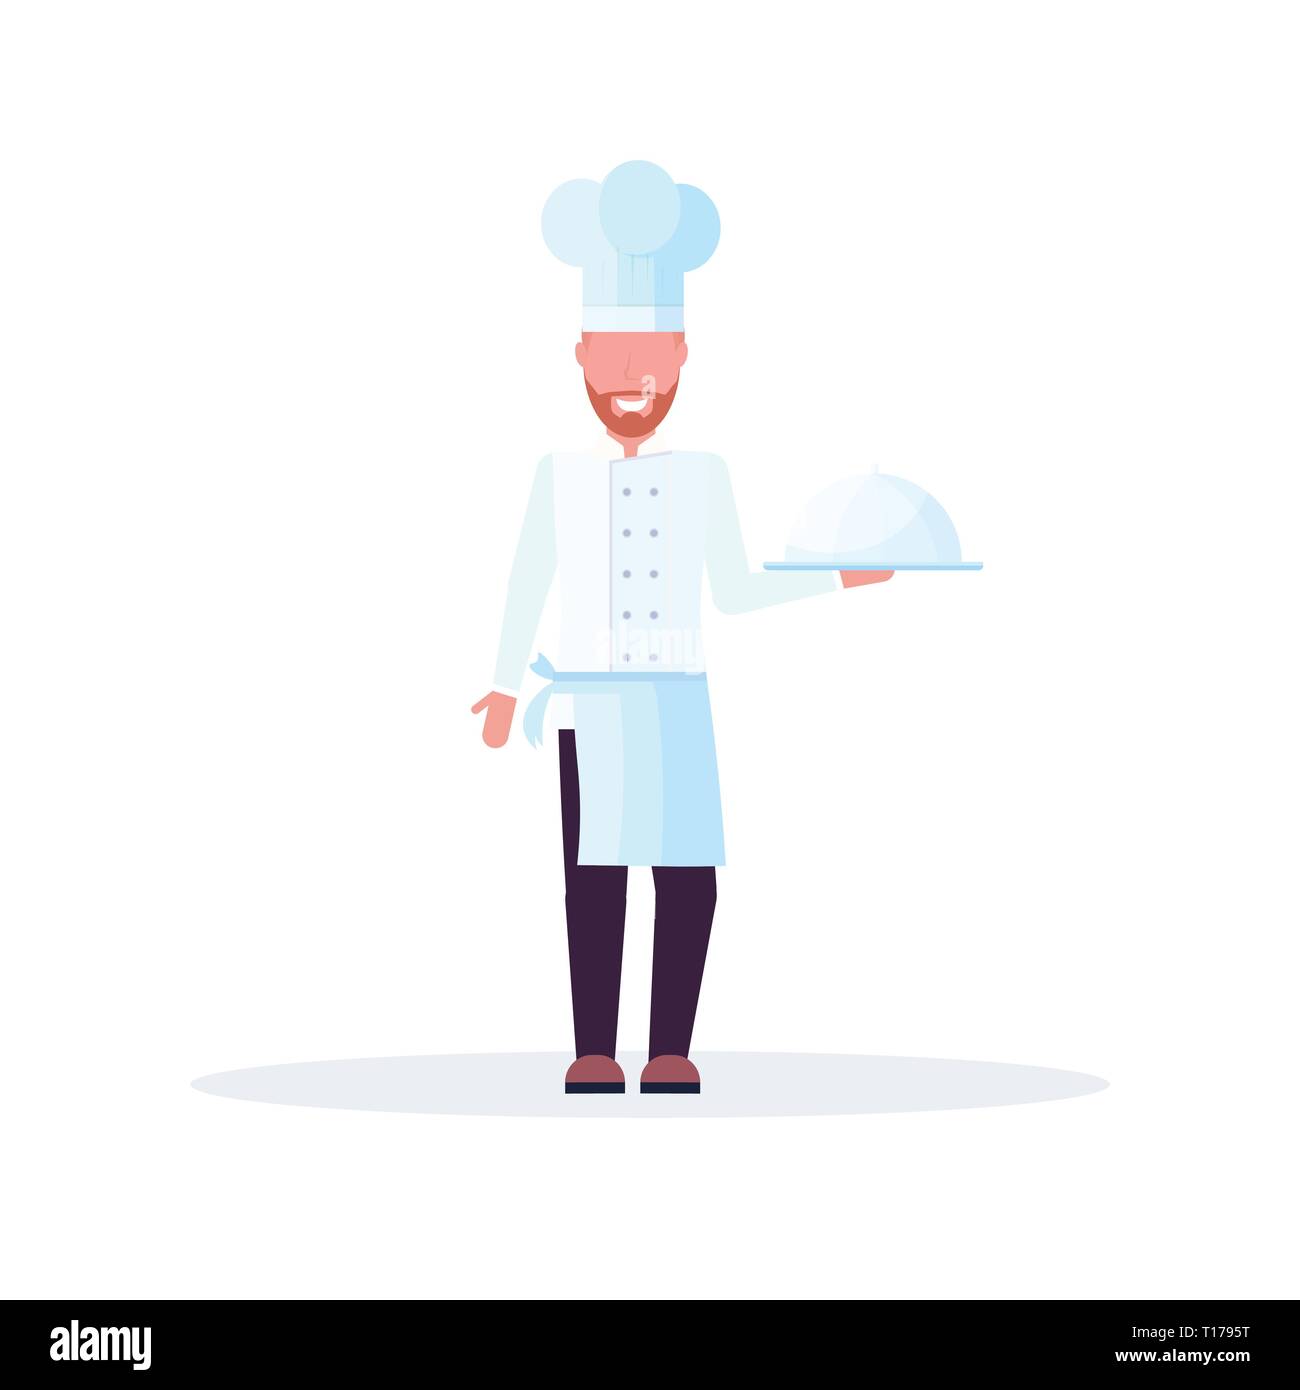 Küchenchef Holding abgedeckt Platter mit Teller Mann in Uniform professionelle Beschäftigung Essen kochen Konzept männliche Zeichentrickfigur in voller Länge weiß Stock Vektor